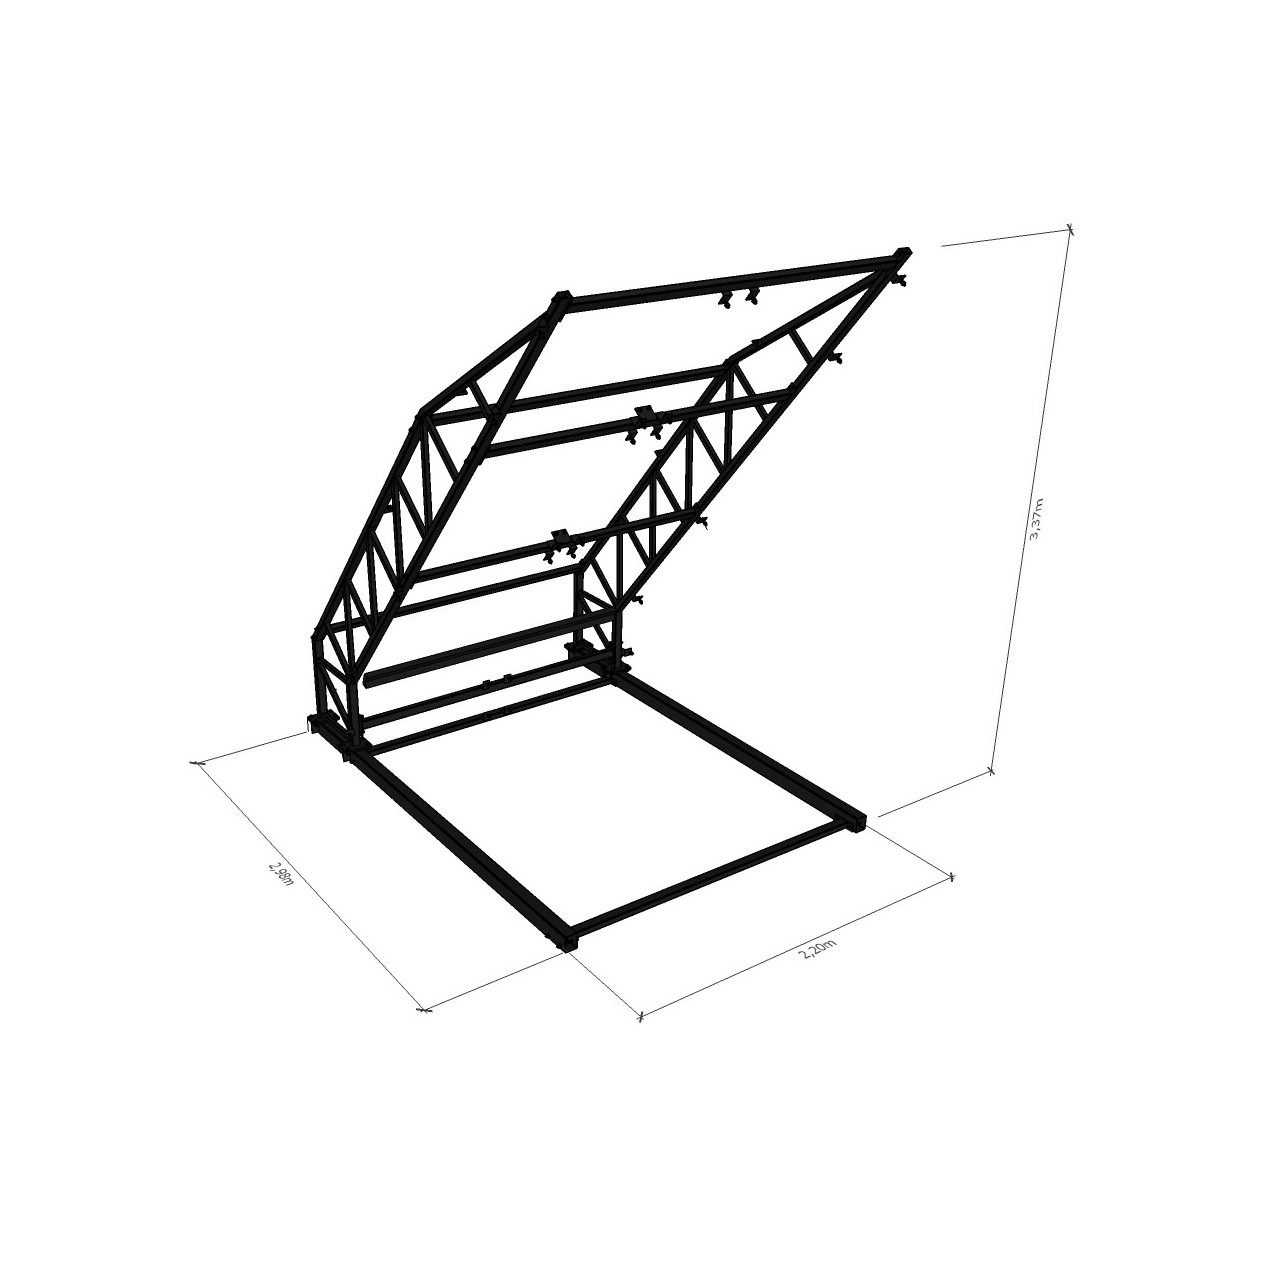 Frame + panels + mattress of Freestanding Moonboard DIY